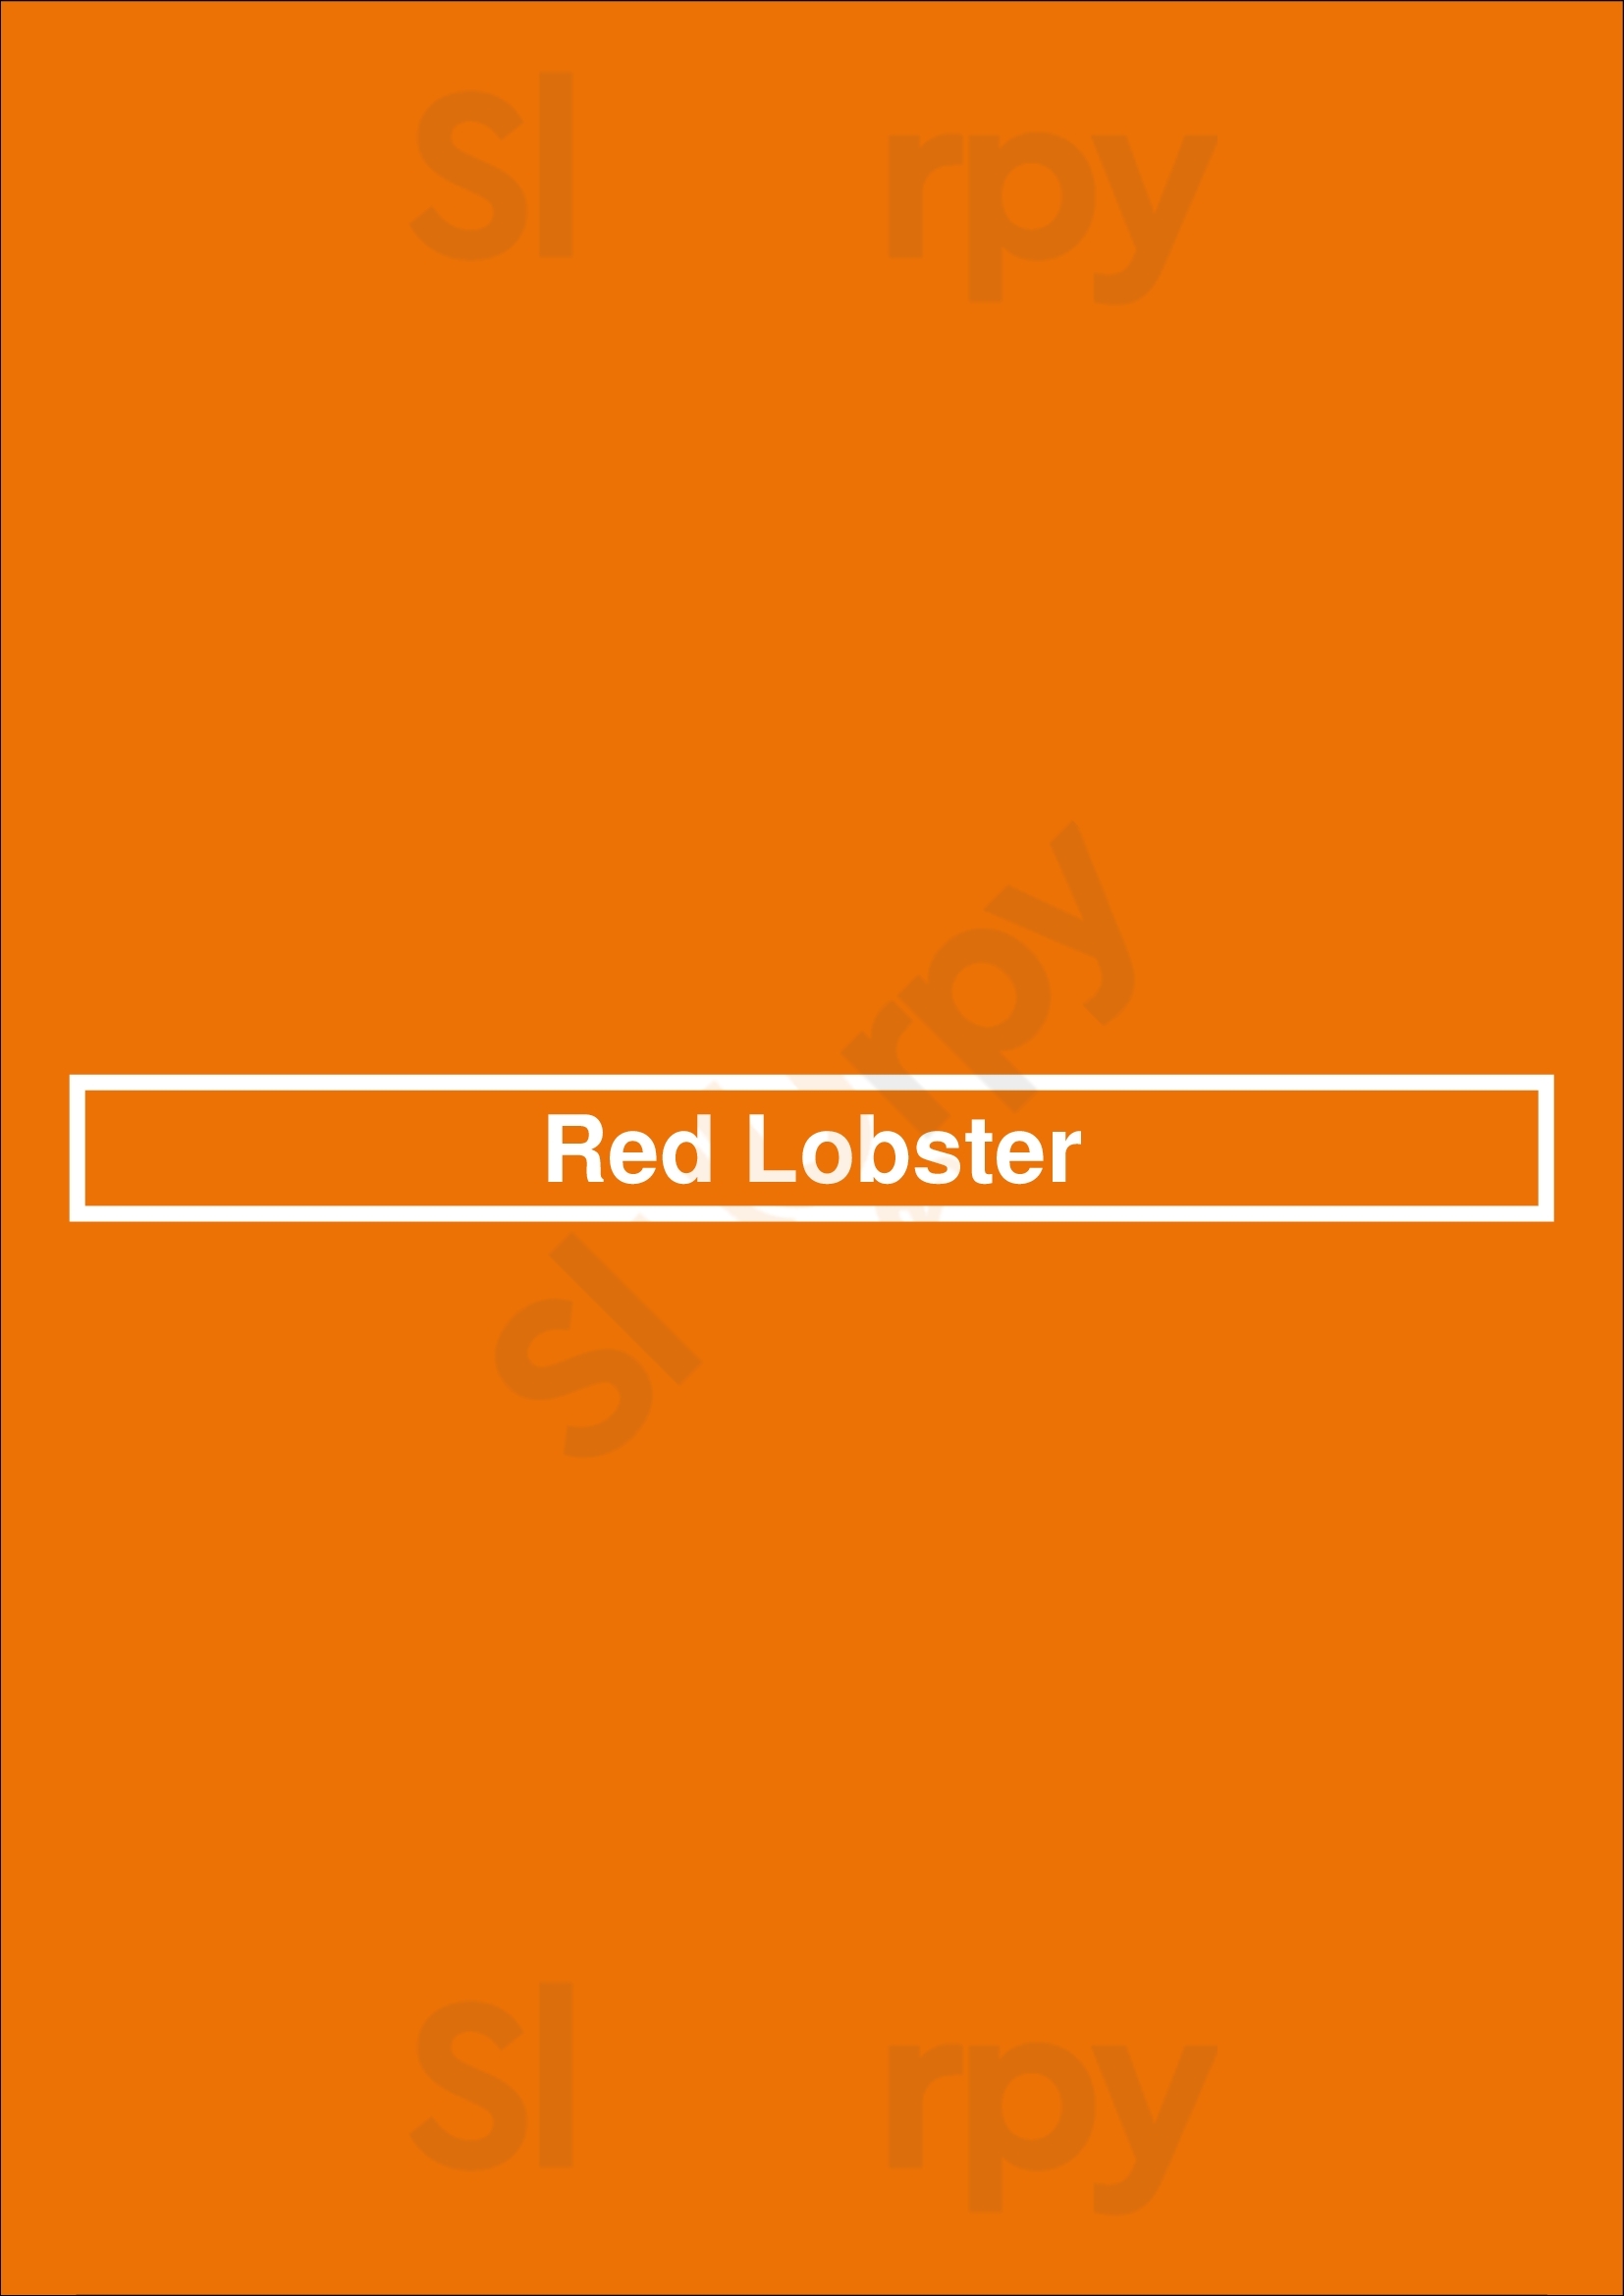 Red Lobster Saint Louis Menu - 1